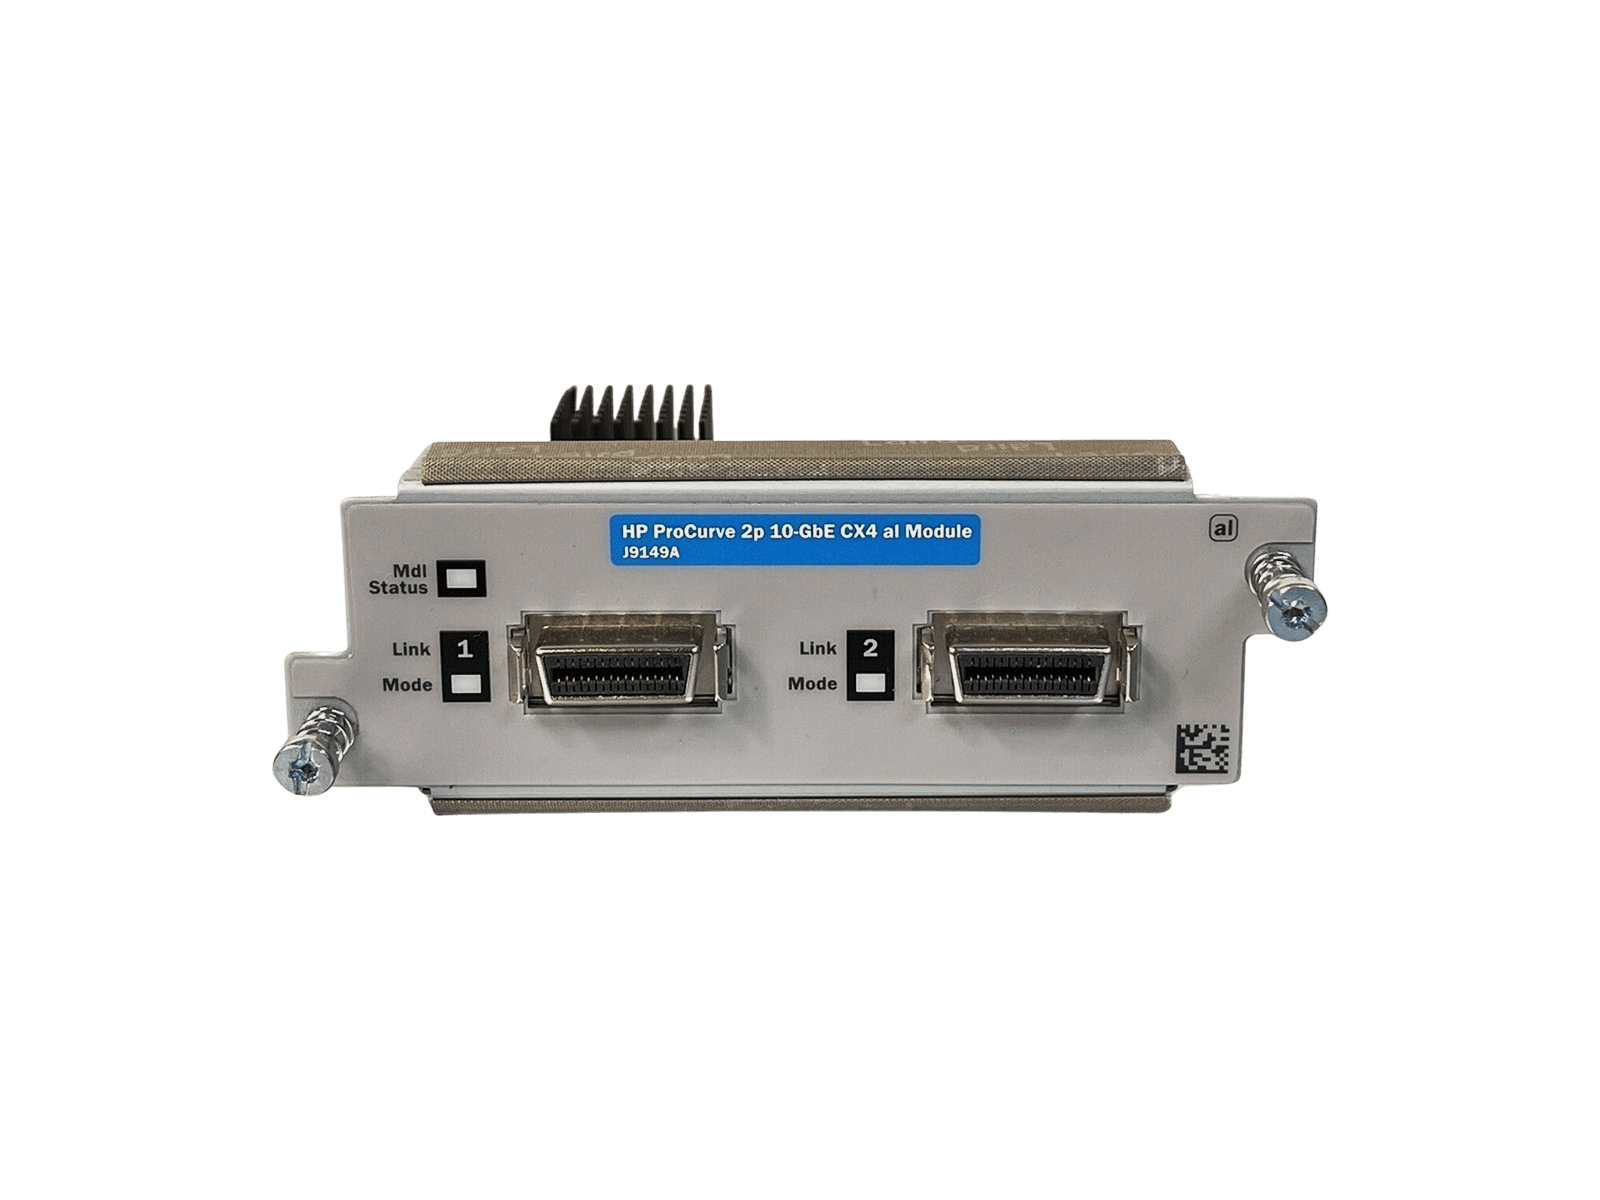 HP J9149A HPE ProCurve 2P 2-Port 10GbE CX4 AL Module 5070-5088 2910 Series B-4907-D3.